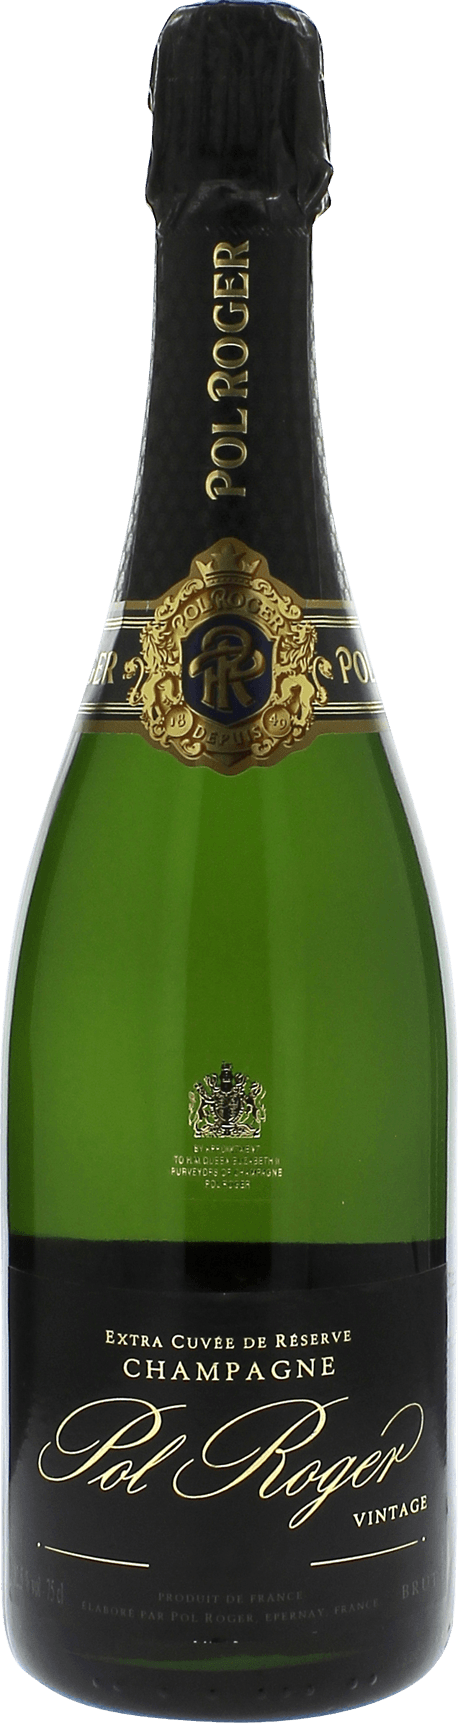 Pol roger brut en tui 2015  Pol ROGER, Champagne